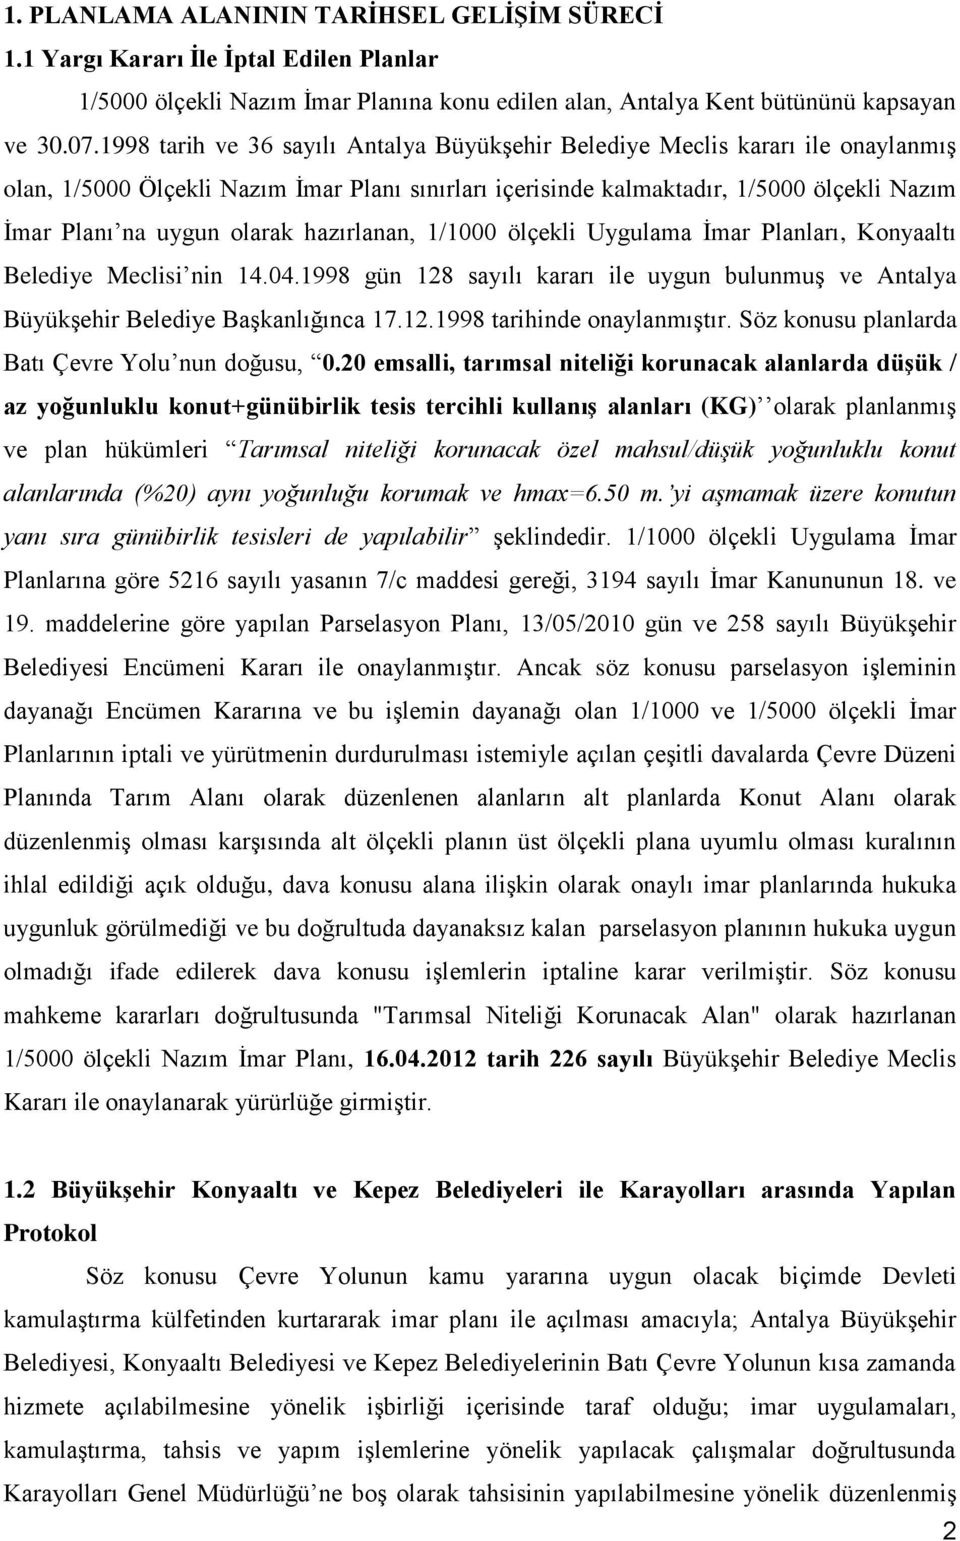 olarak hazırlanan, 1/1000 ölçekli Uygulama İmar Planları, Konyaaltı Belediye Meclisi nin 14.04.1998 gün 128 sayılı kararı ile uygun bulunmuş ve Antalya Büyükşehir Belediye Başkanlığınca 17.12.1998 tarihinde onaylanmıştır.